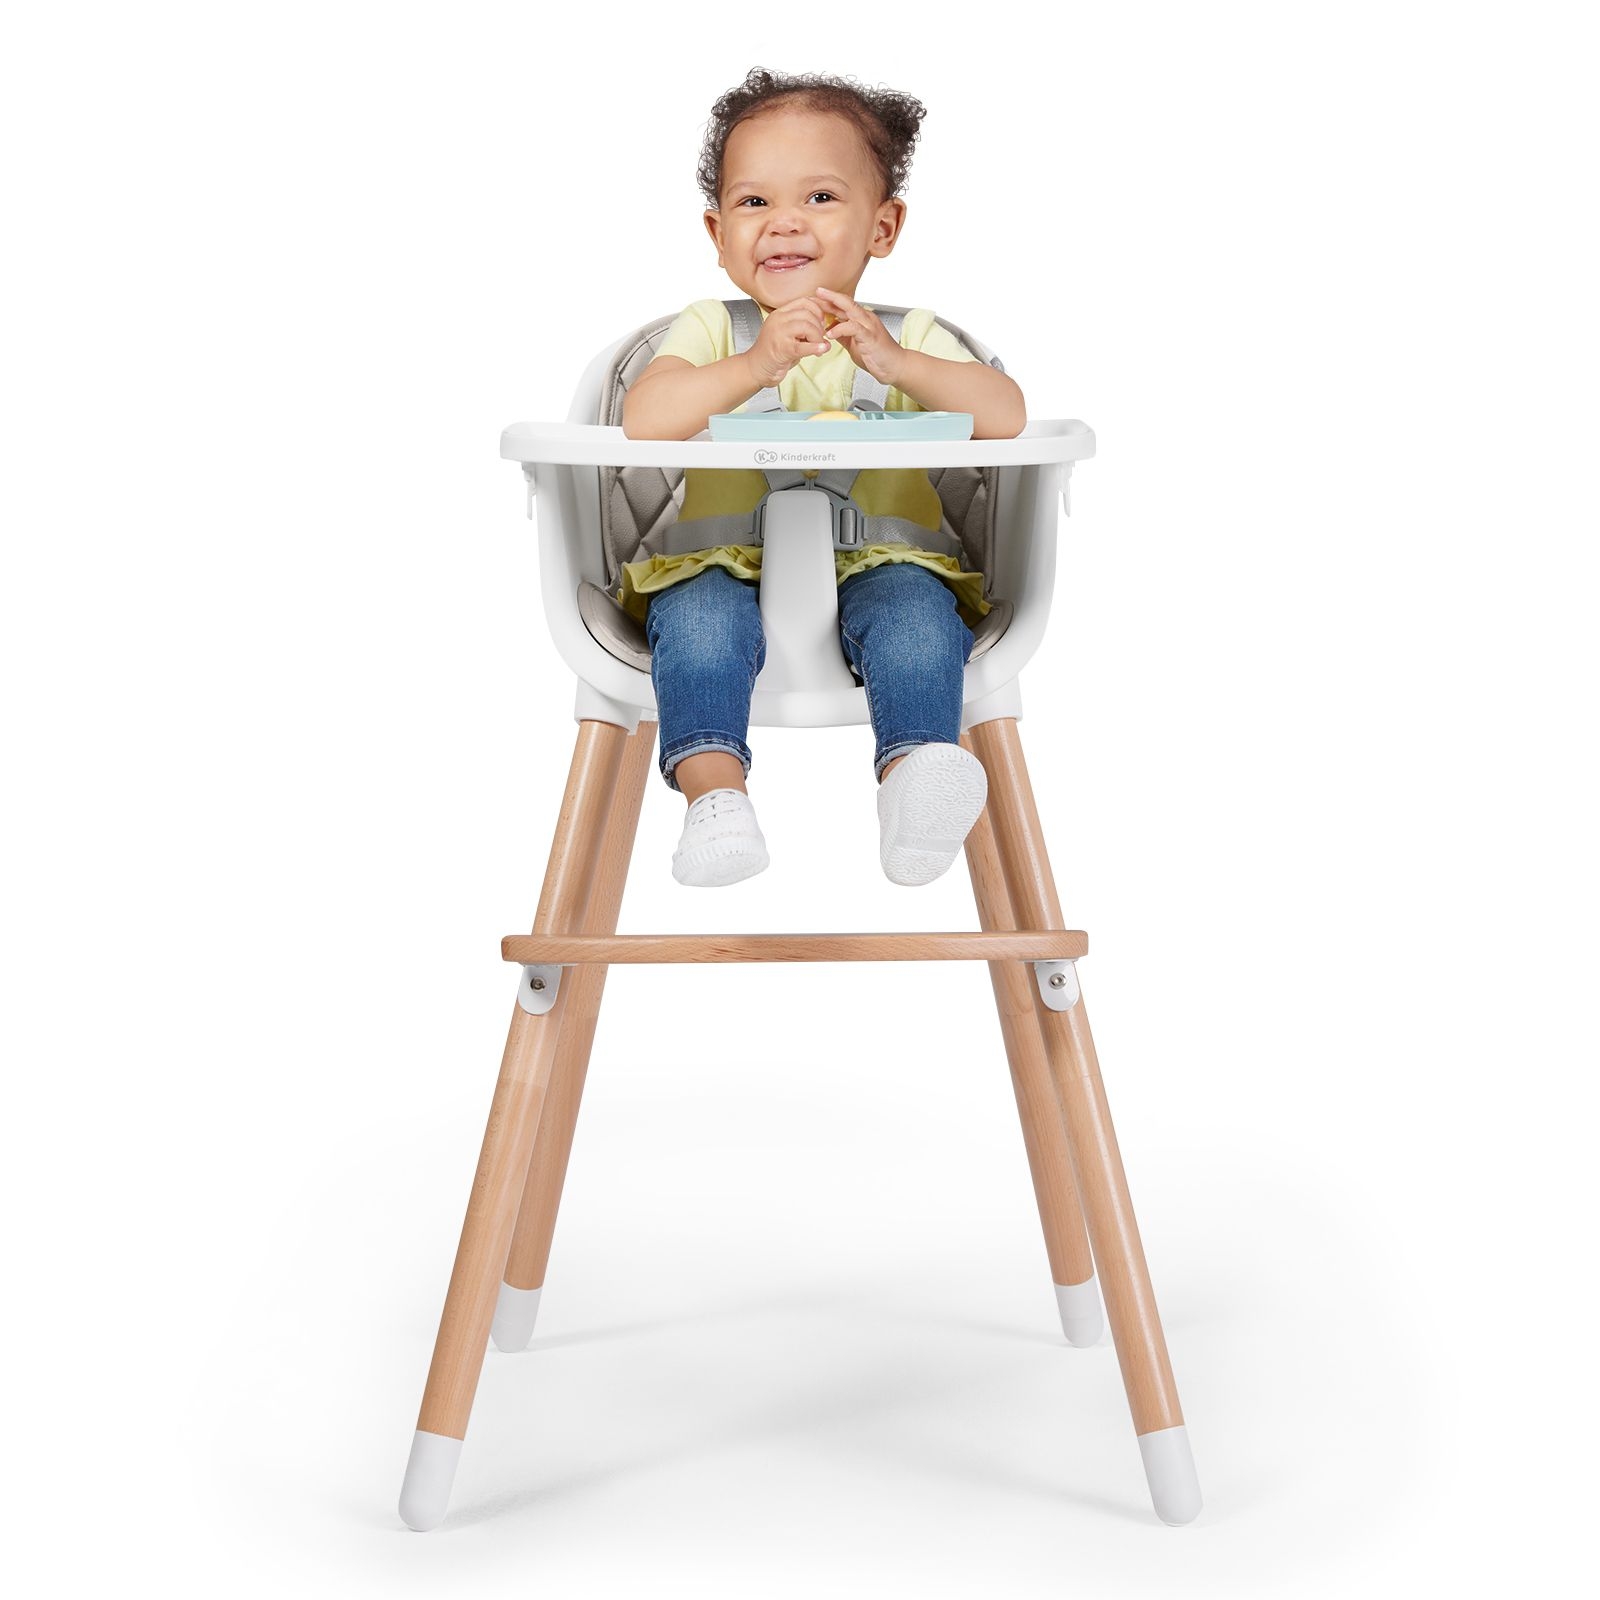 Krzesełko, które rośnie razem z dzieckiem